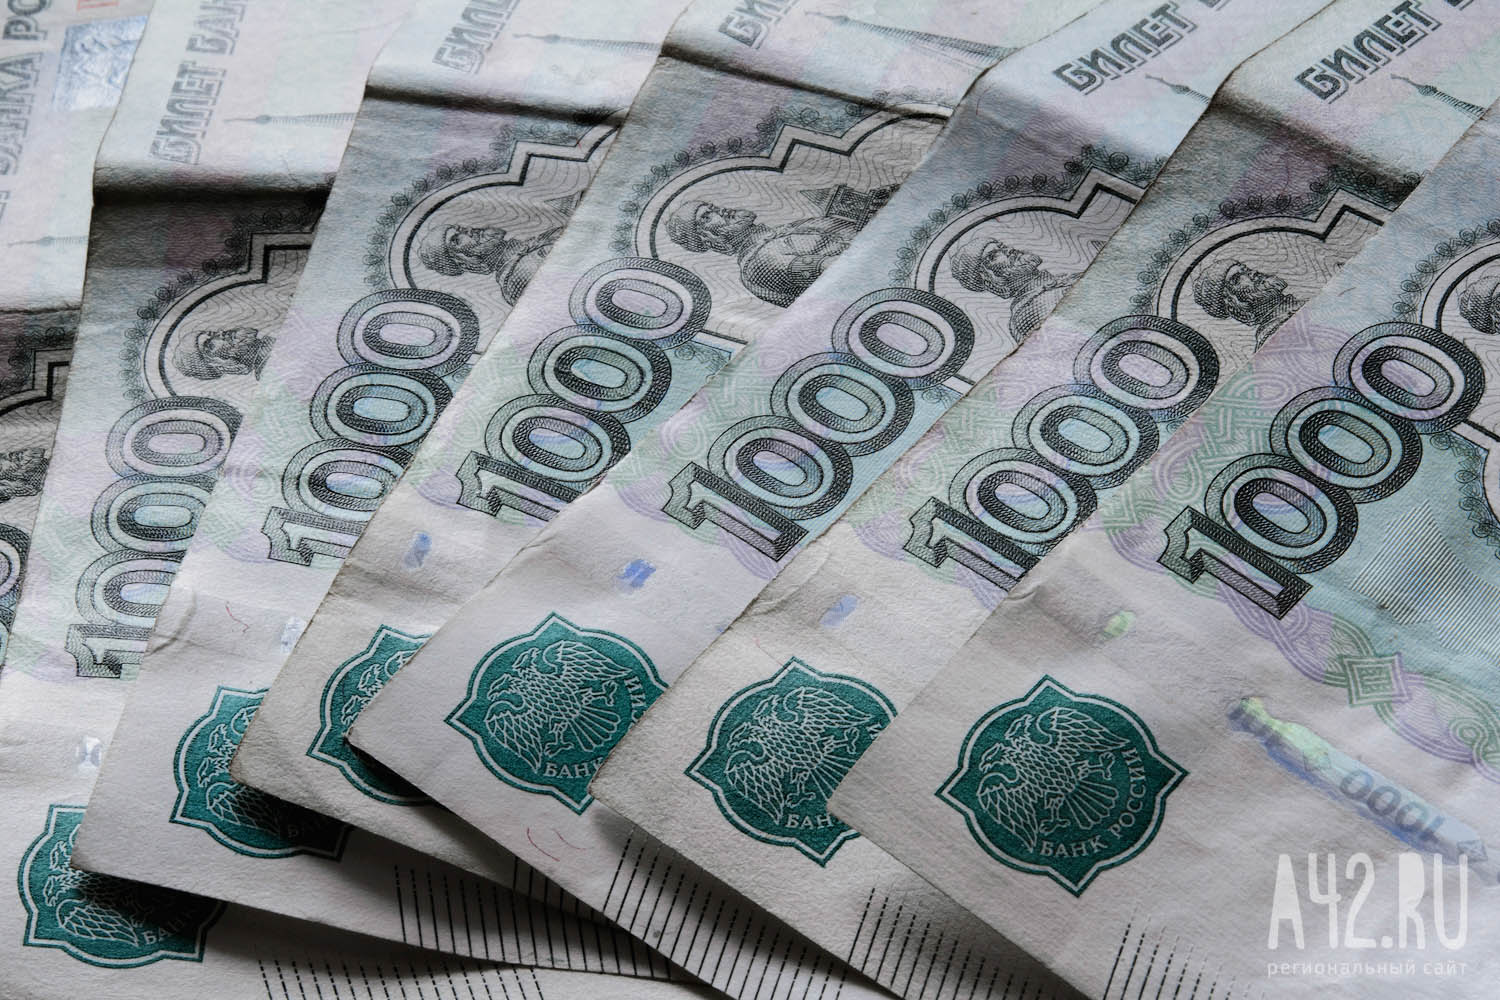 Исследование: 5% кузбасских работников получают более 100 тысяч рублей в месяц